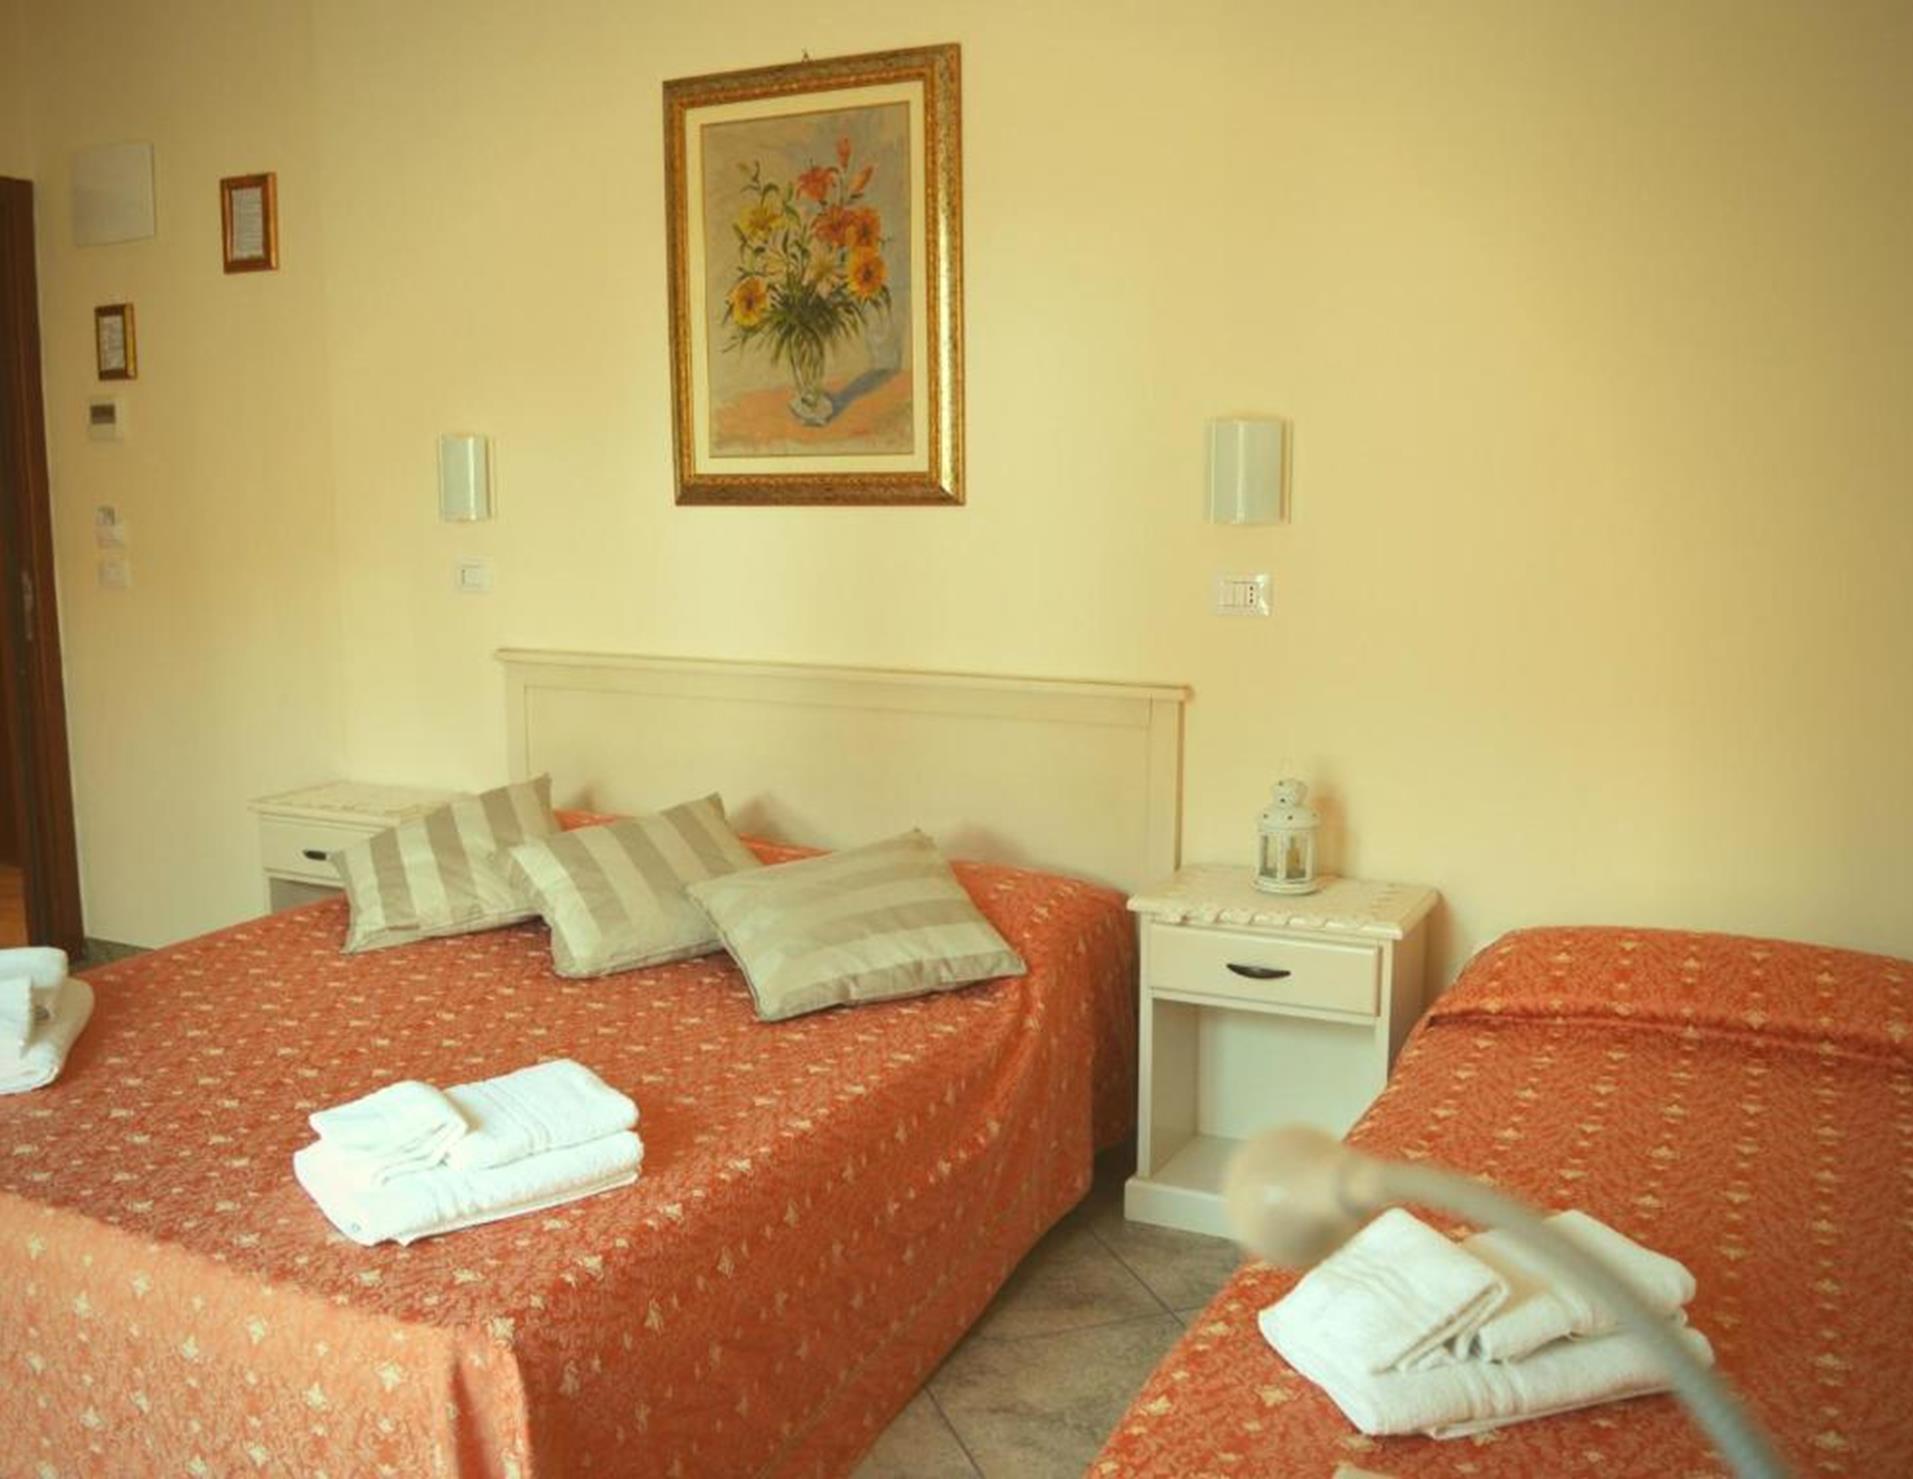 Hotel Franca - Room 1